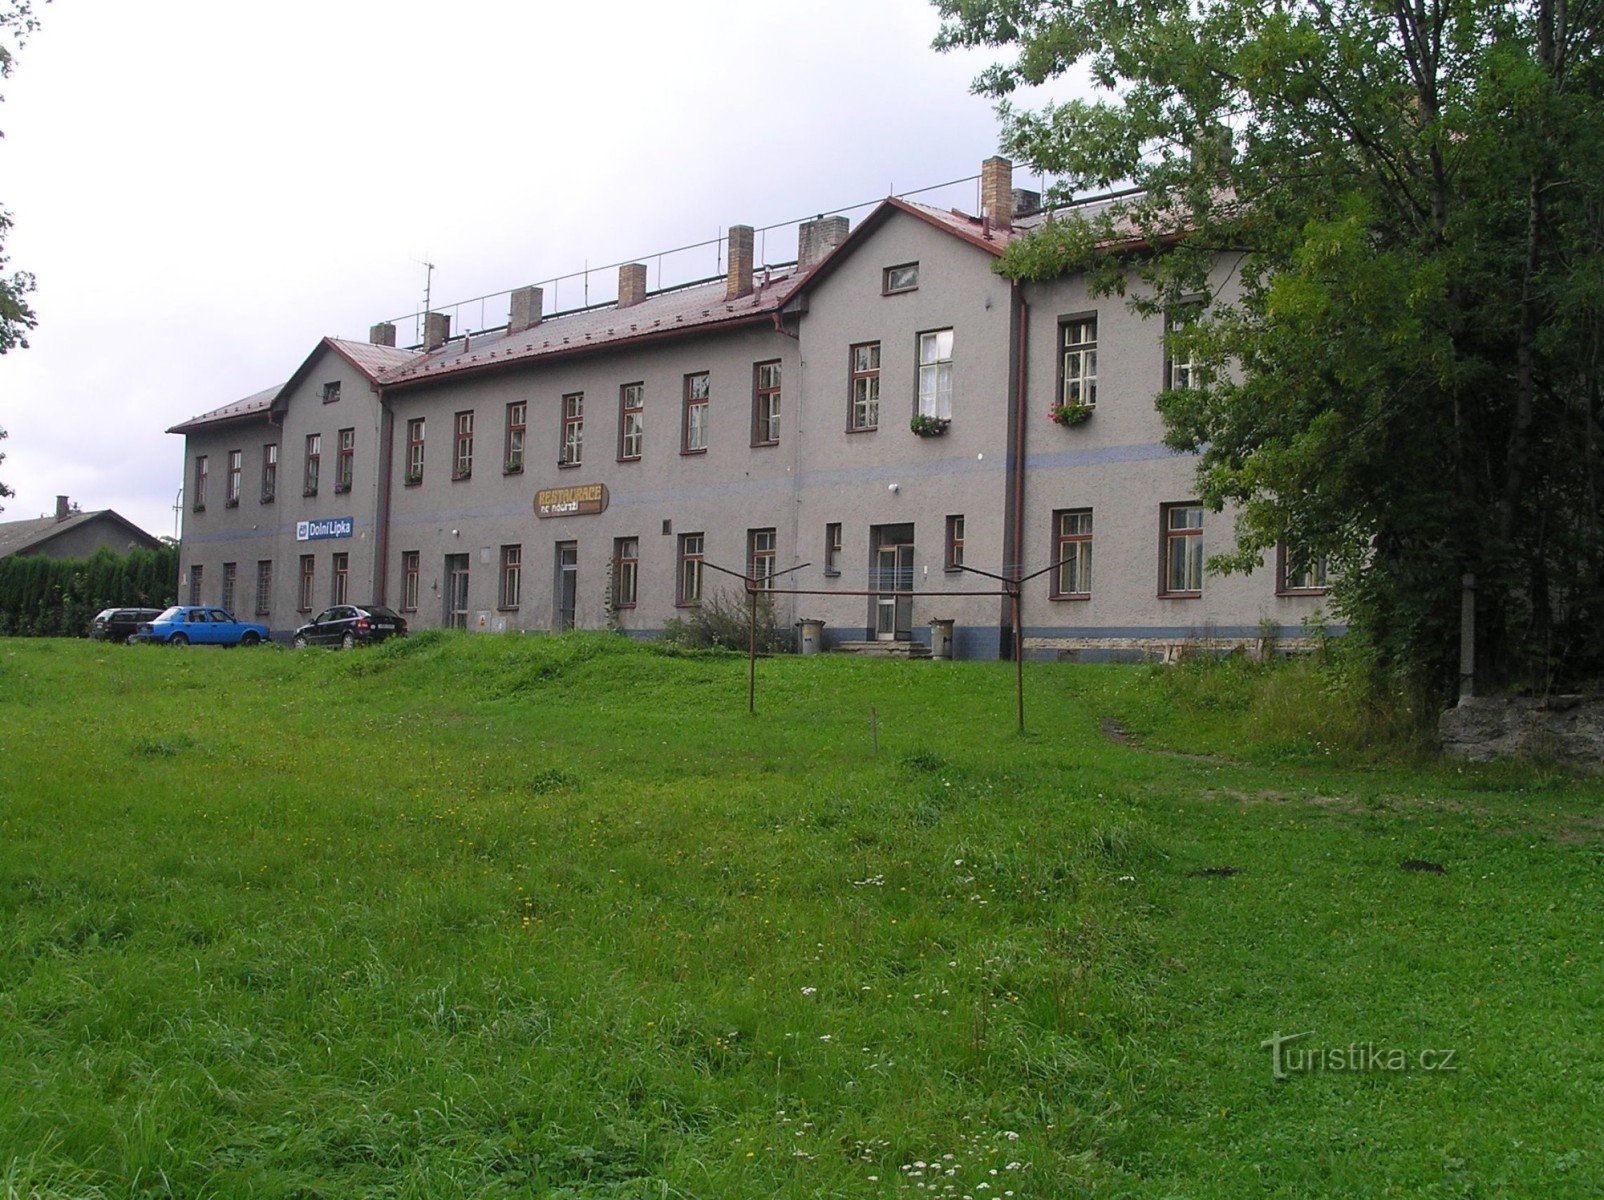 Clădirea gării din Dolní Lipka